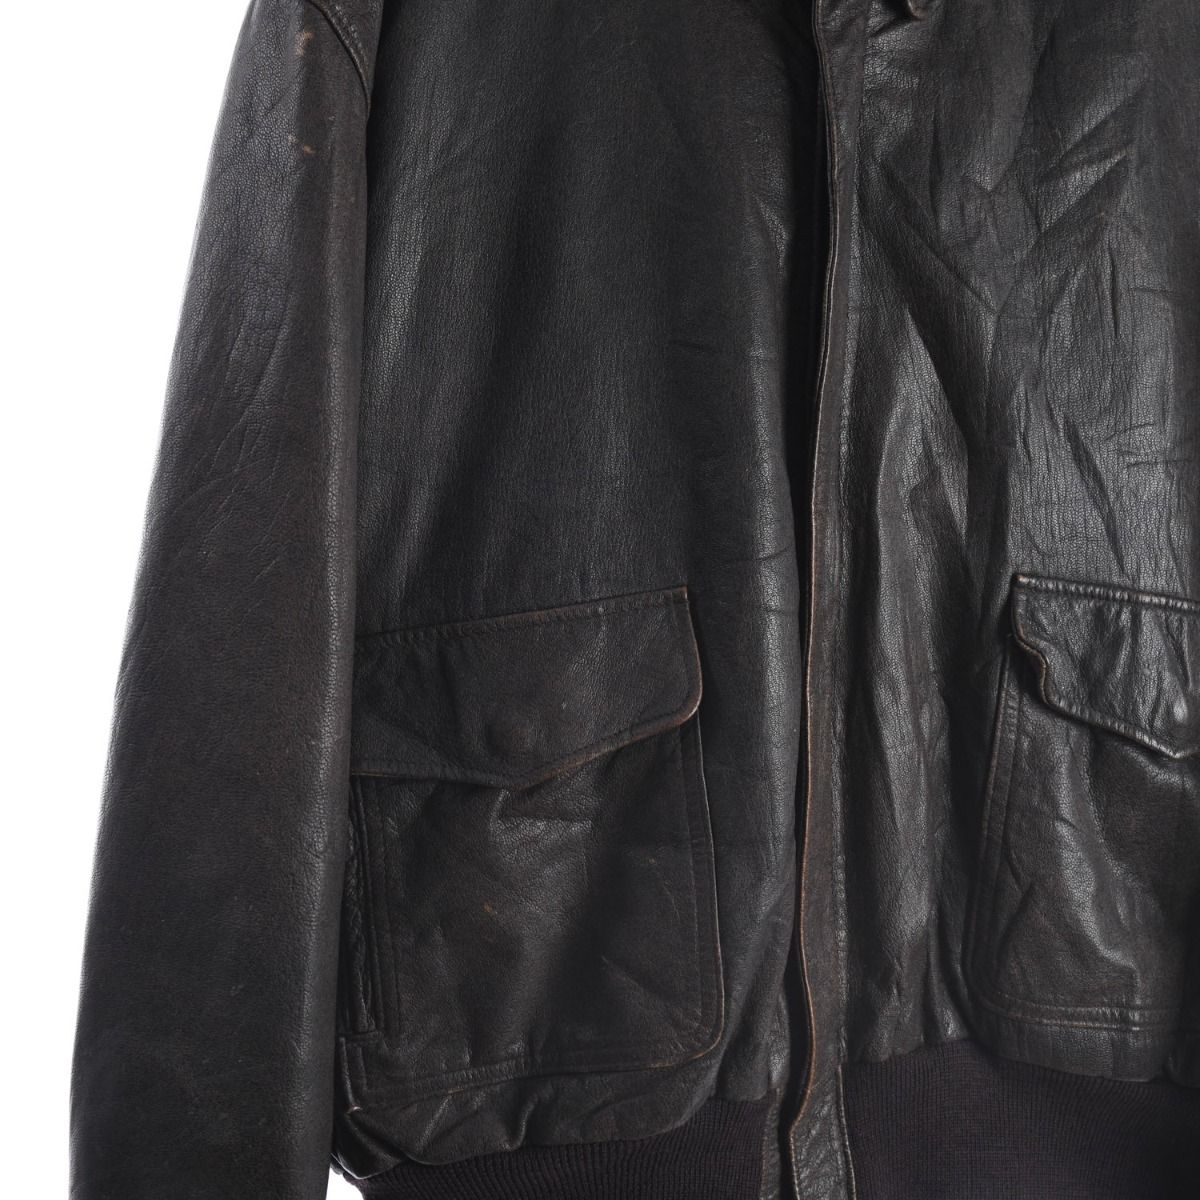 LL Bean 1970s A2 Leather Flight Jacket